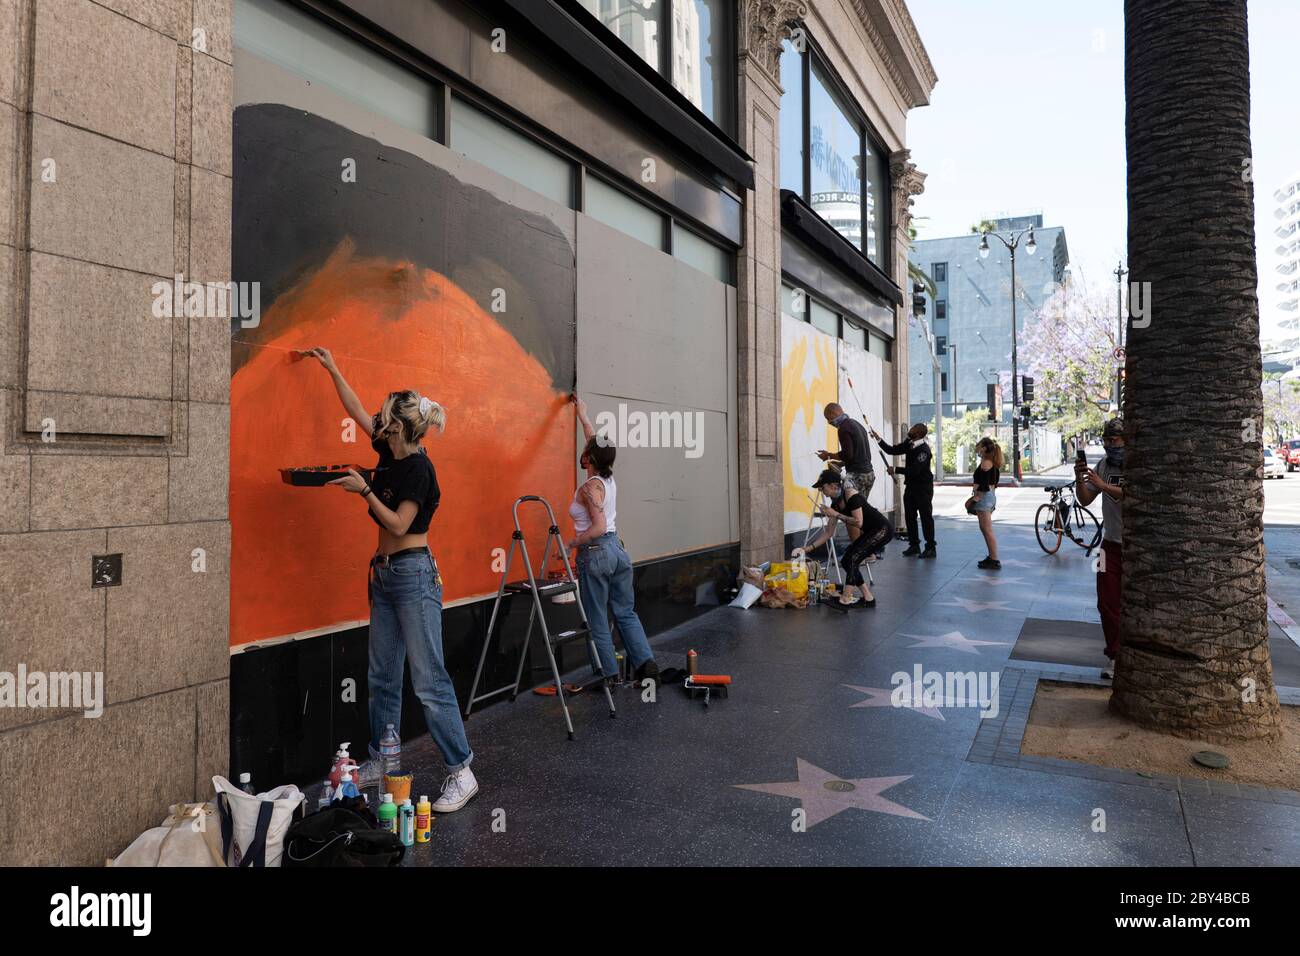 Hollywood, CA/USA - 8 giugno 2020: Dopo una serie di Black Lives Matter proteste a Hollywood, gli artisti di strada lavorano con le aziende per creare BLM Art on Foto Stock